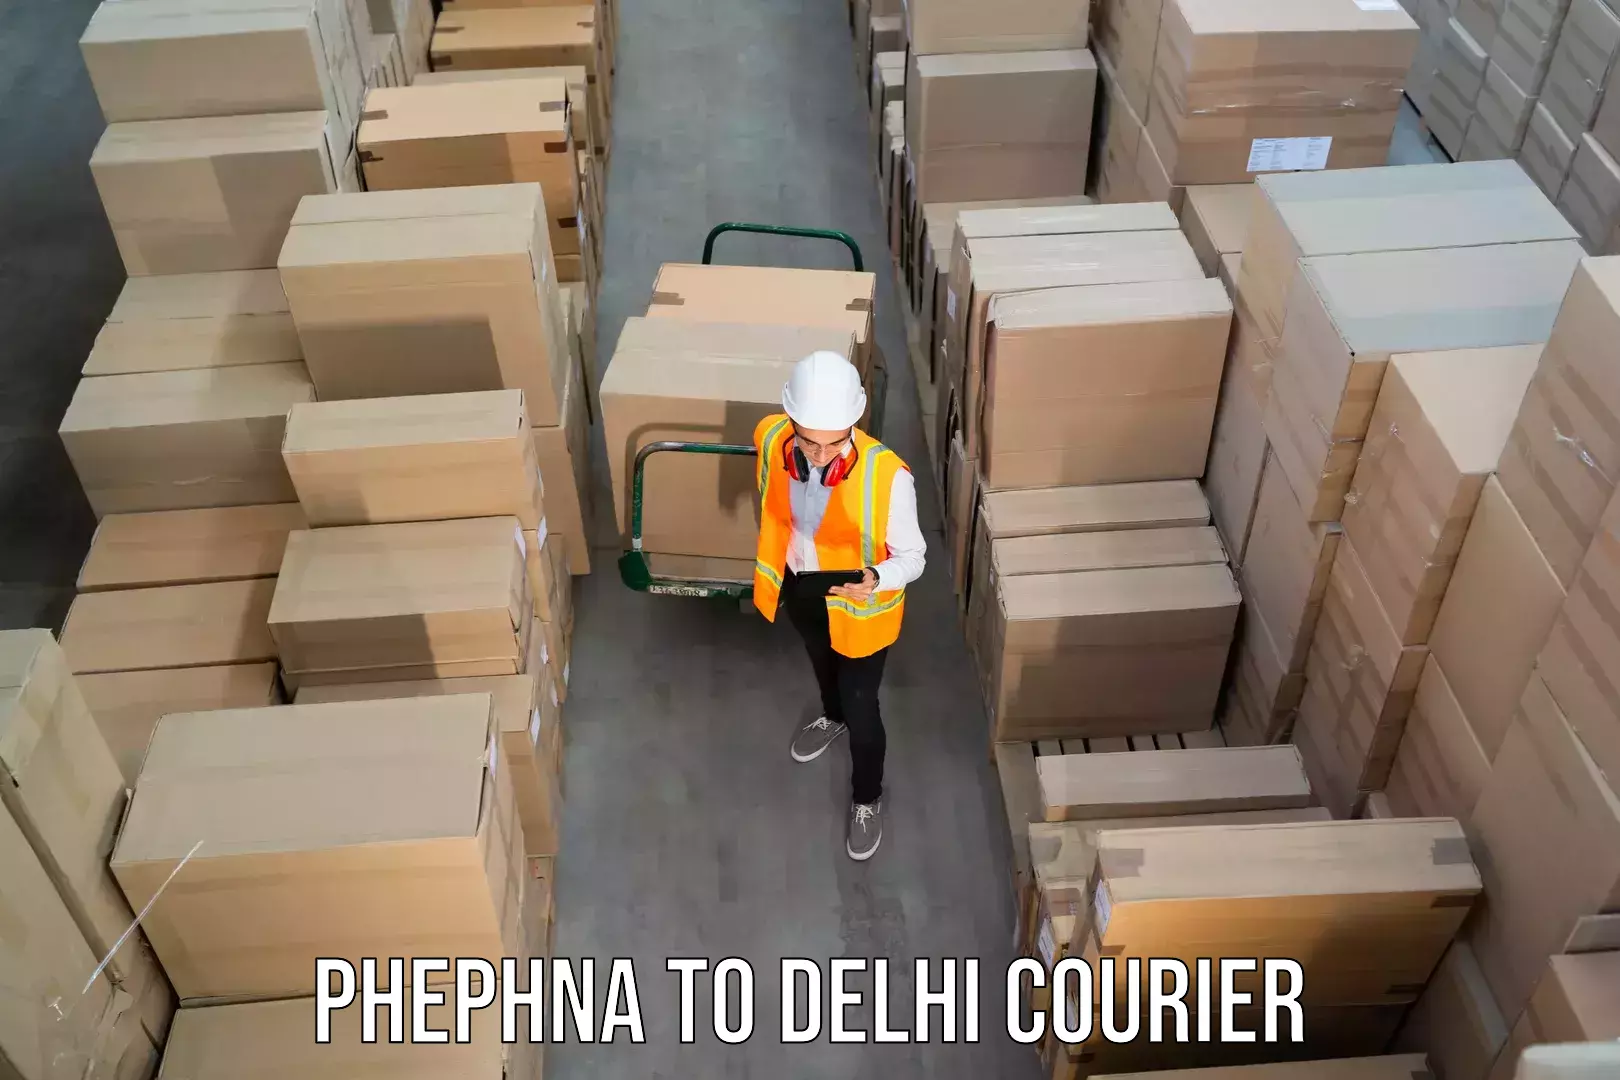 Quick dispatch service in Phephna to IIT Delhi